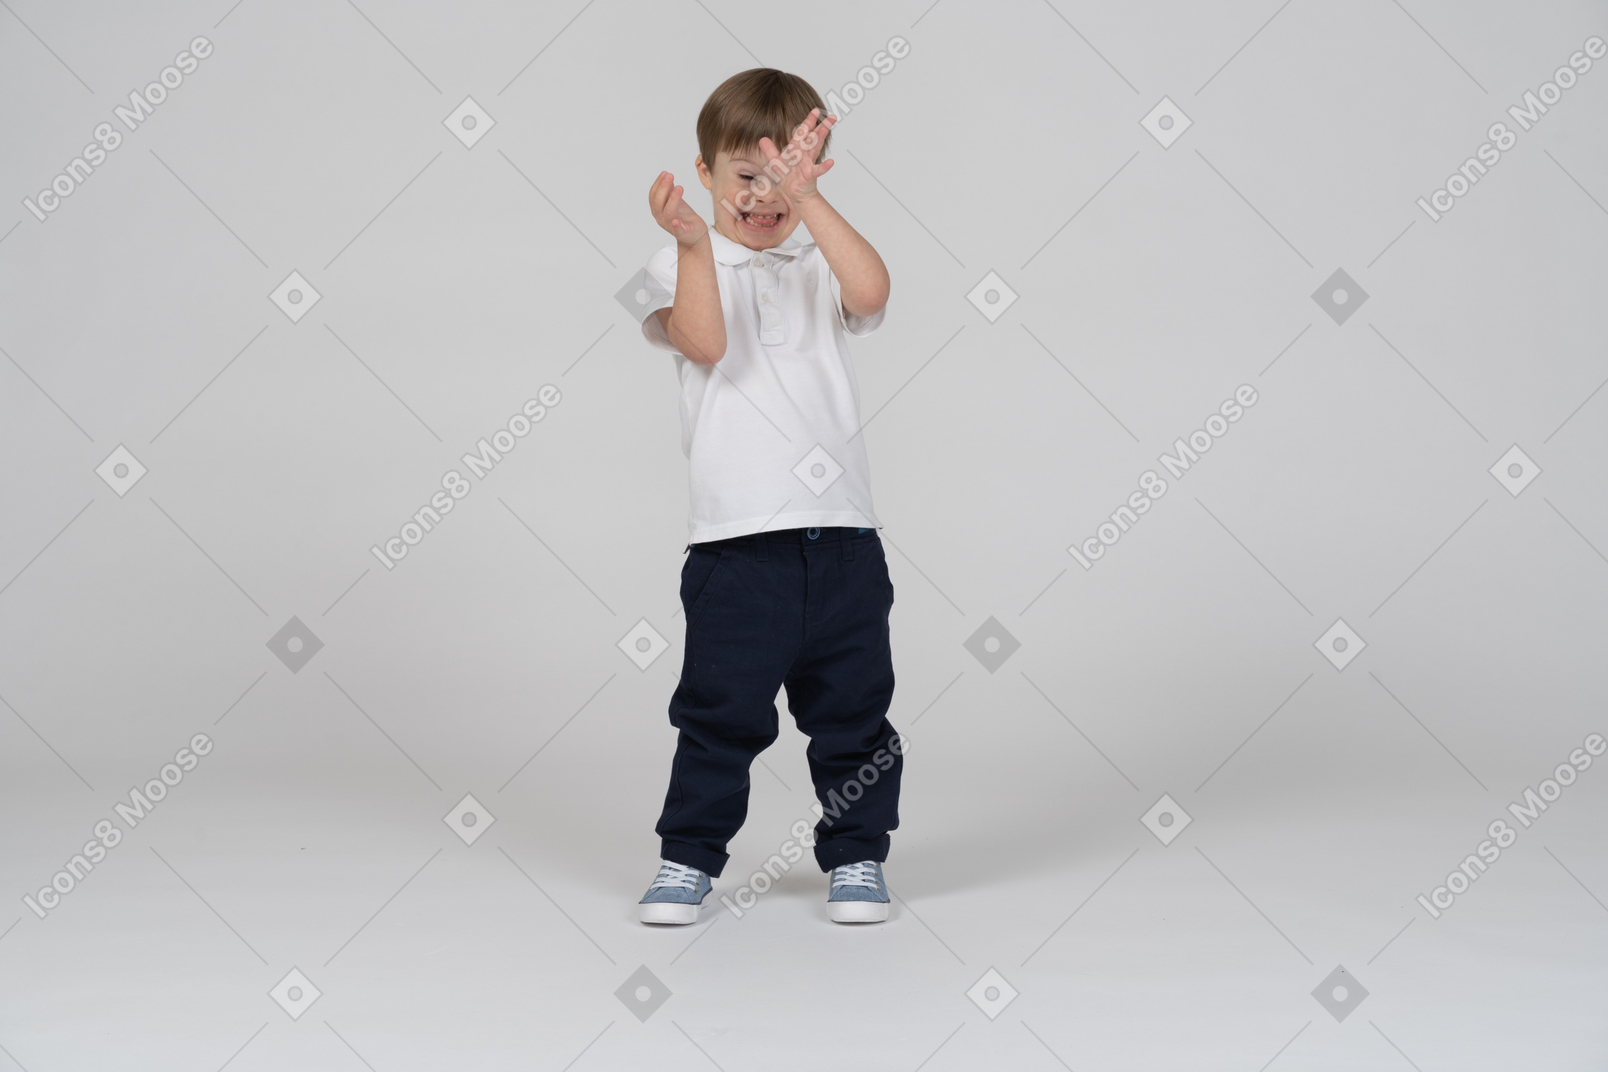 Vista frontal de um menino escondido atrás de suas mãos com um sorriso